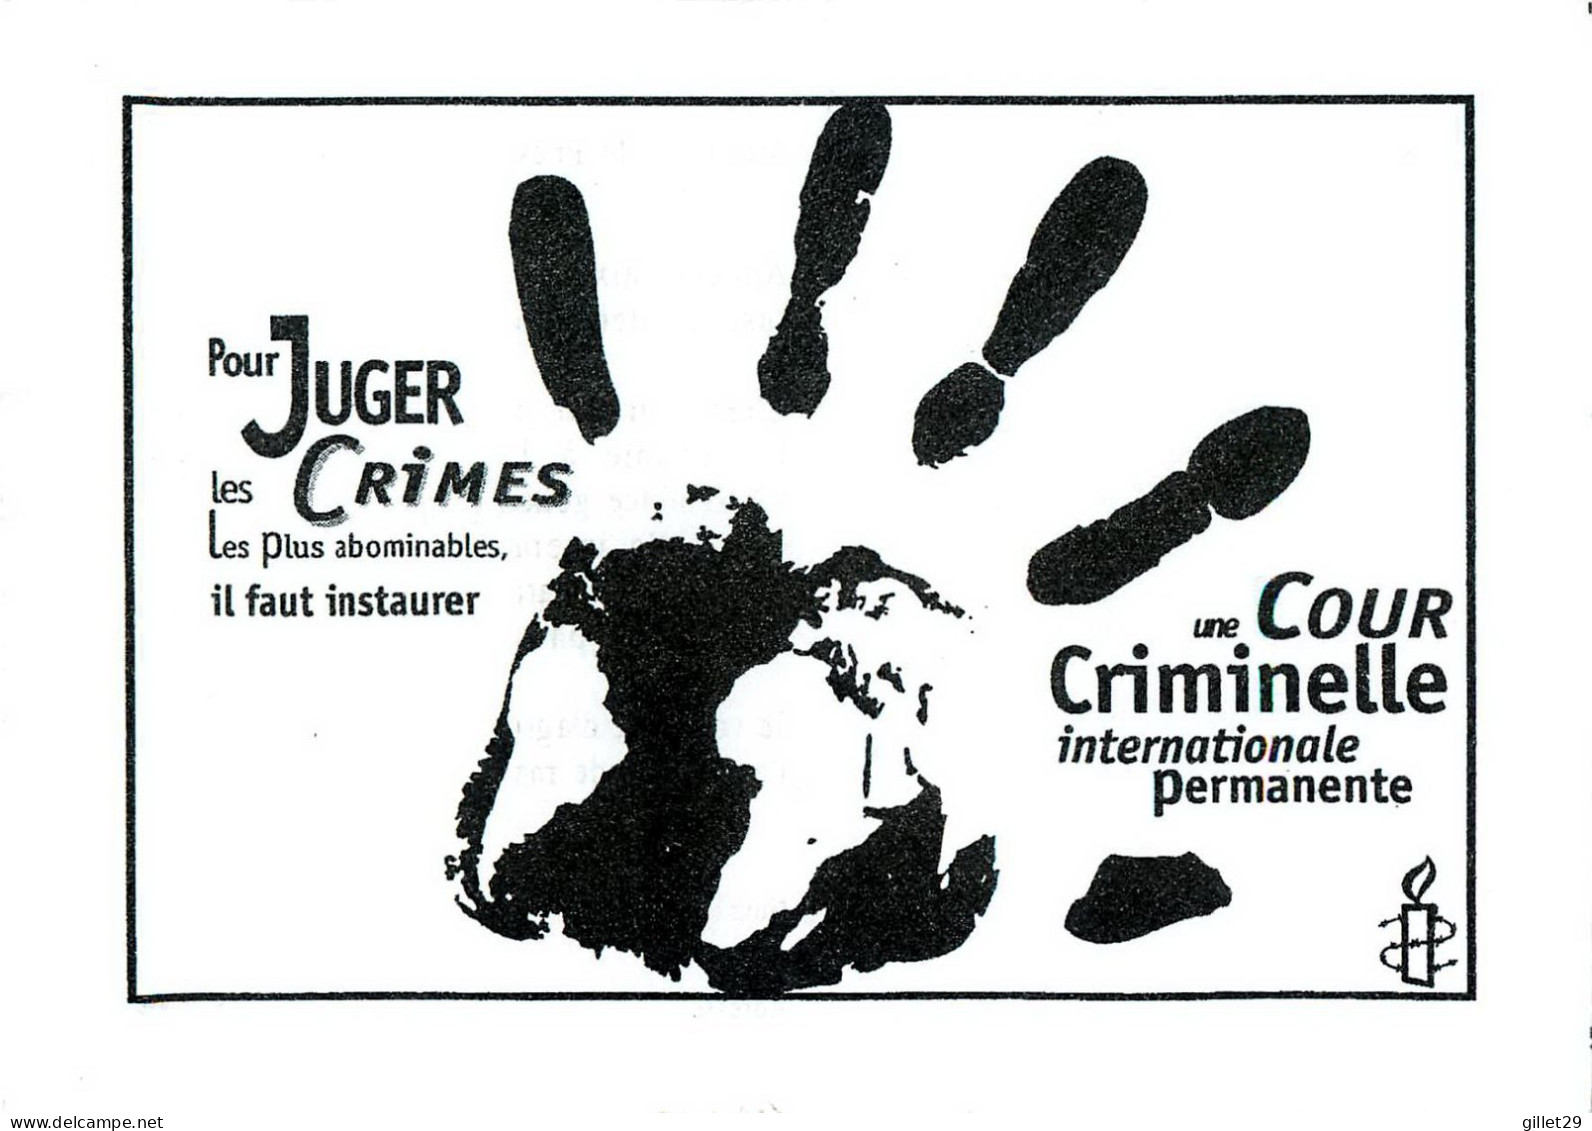 PUBLICITÉ - ADVERTISING - UNE COUR CRIMINELLE INTERNATIONALE PERMANENTE - MONSIEUR LE PRÉSIDENT ! - - Werbepostkarten